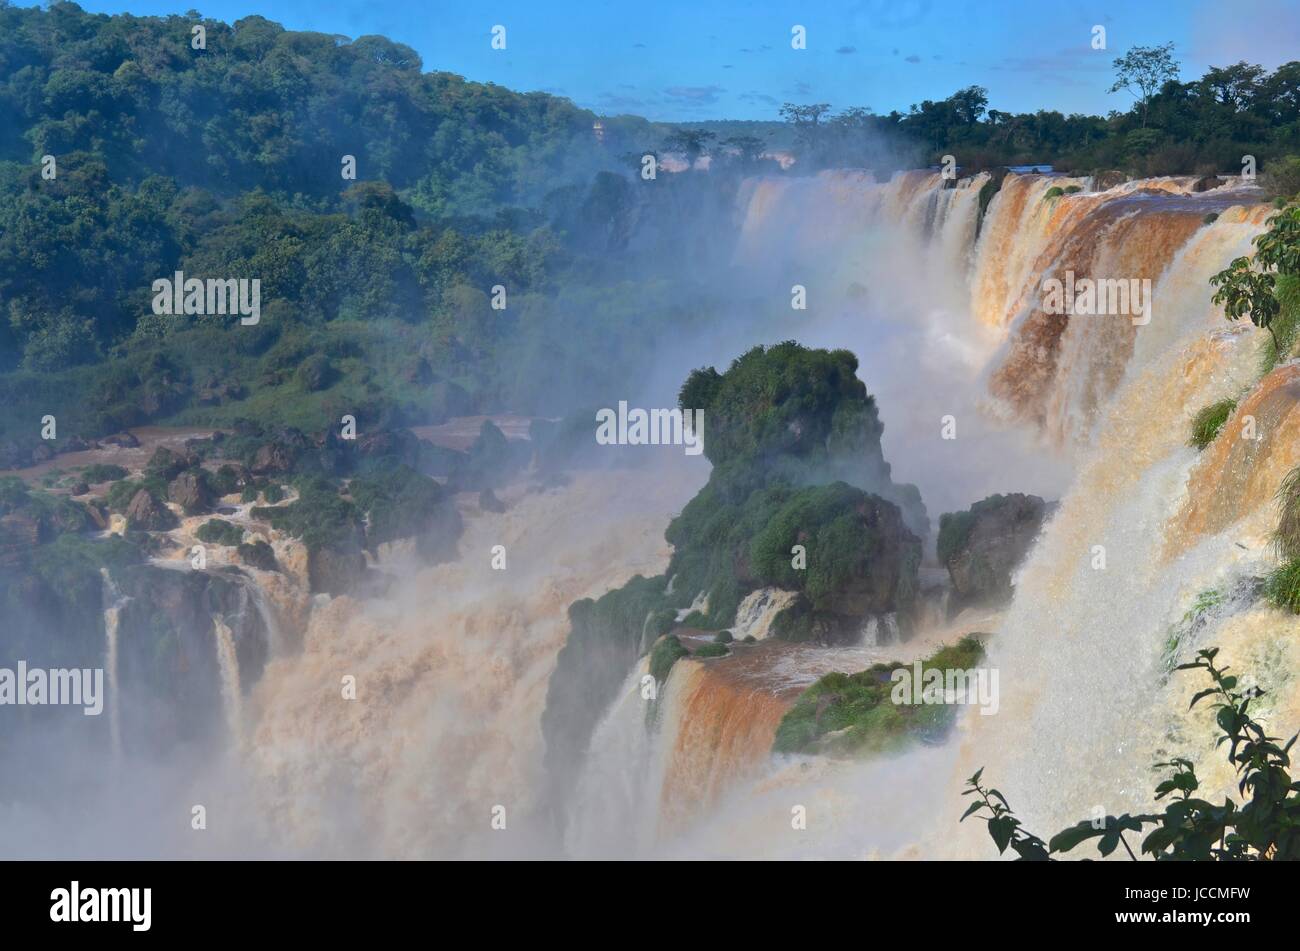 Le Cascate di Iguassù, cascate di Iguazú, Iguassu Falls, o Iguaçu Falls sono le cascate del fiume Iguazu sul confine di Argentina e Brasile Foto Stock